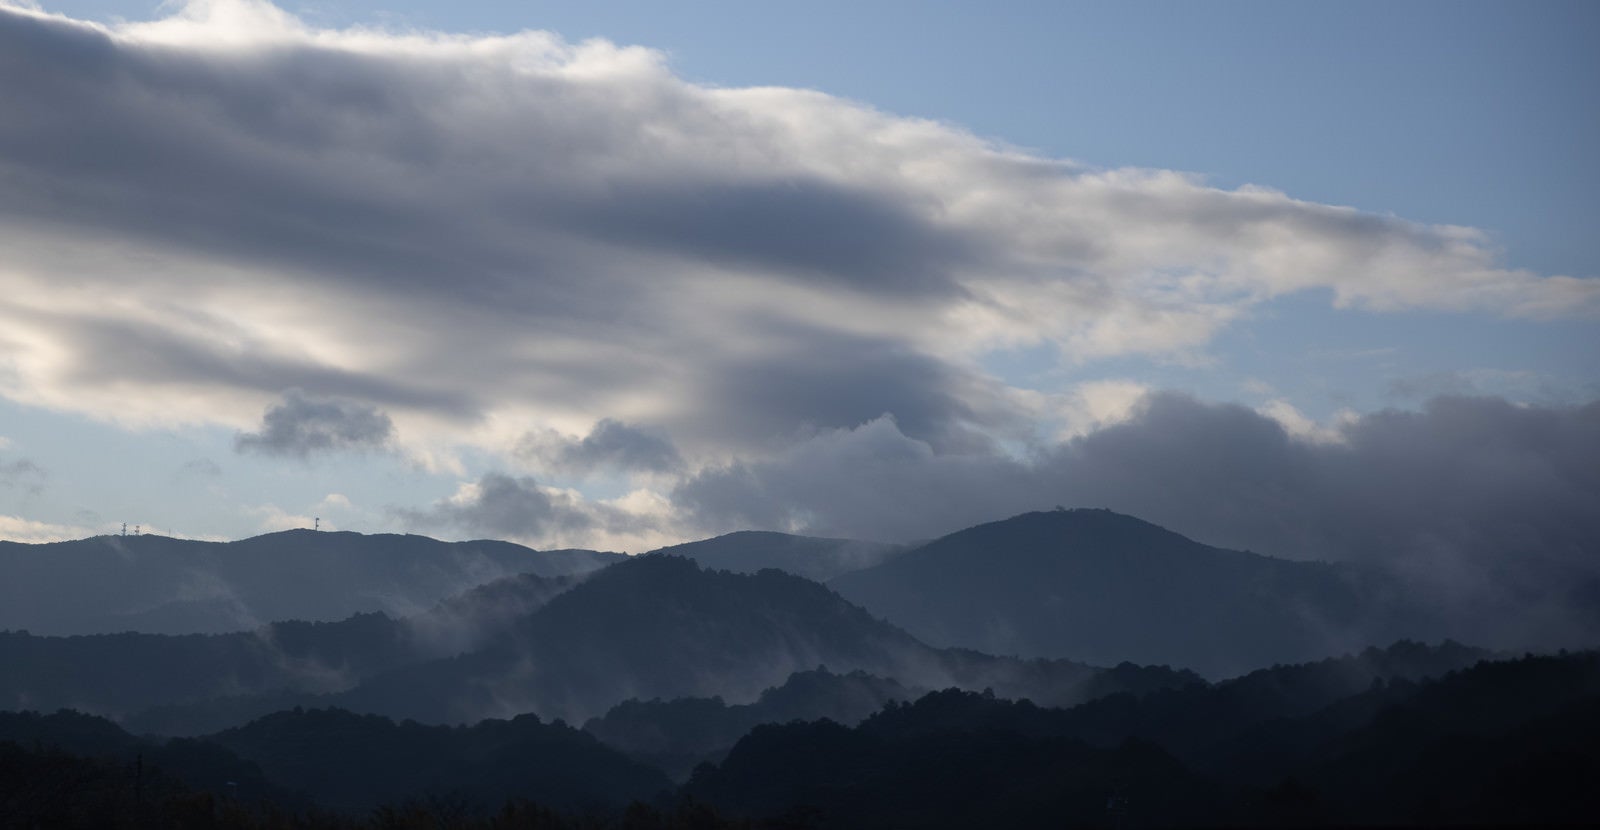 「雨上がりガスがかかる山々」の写真